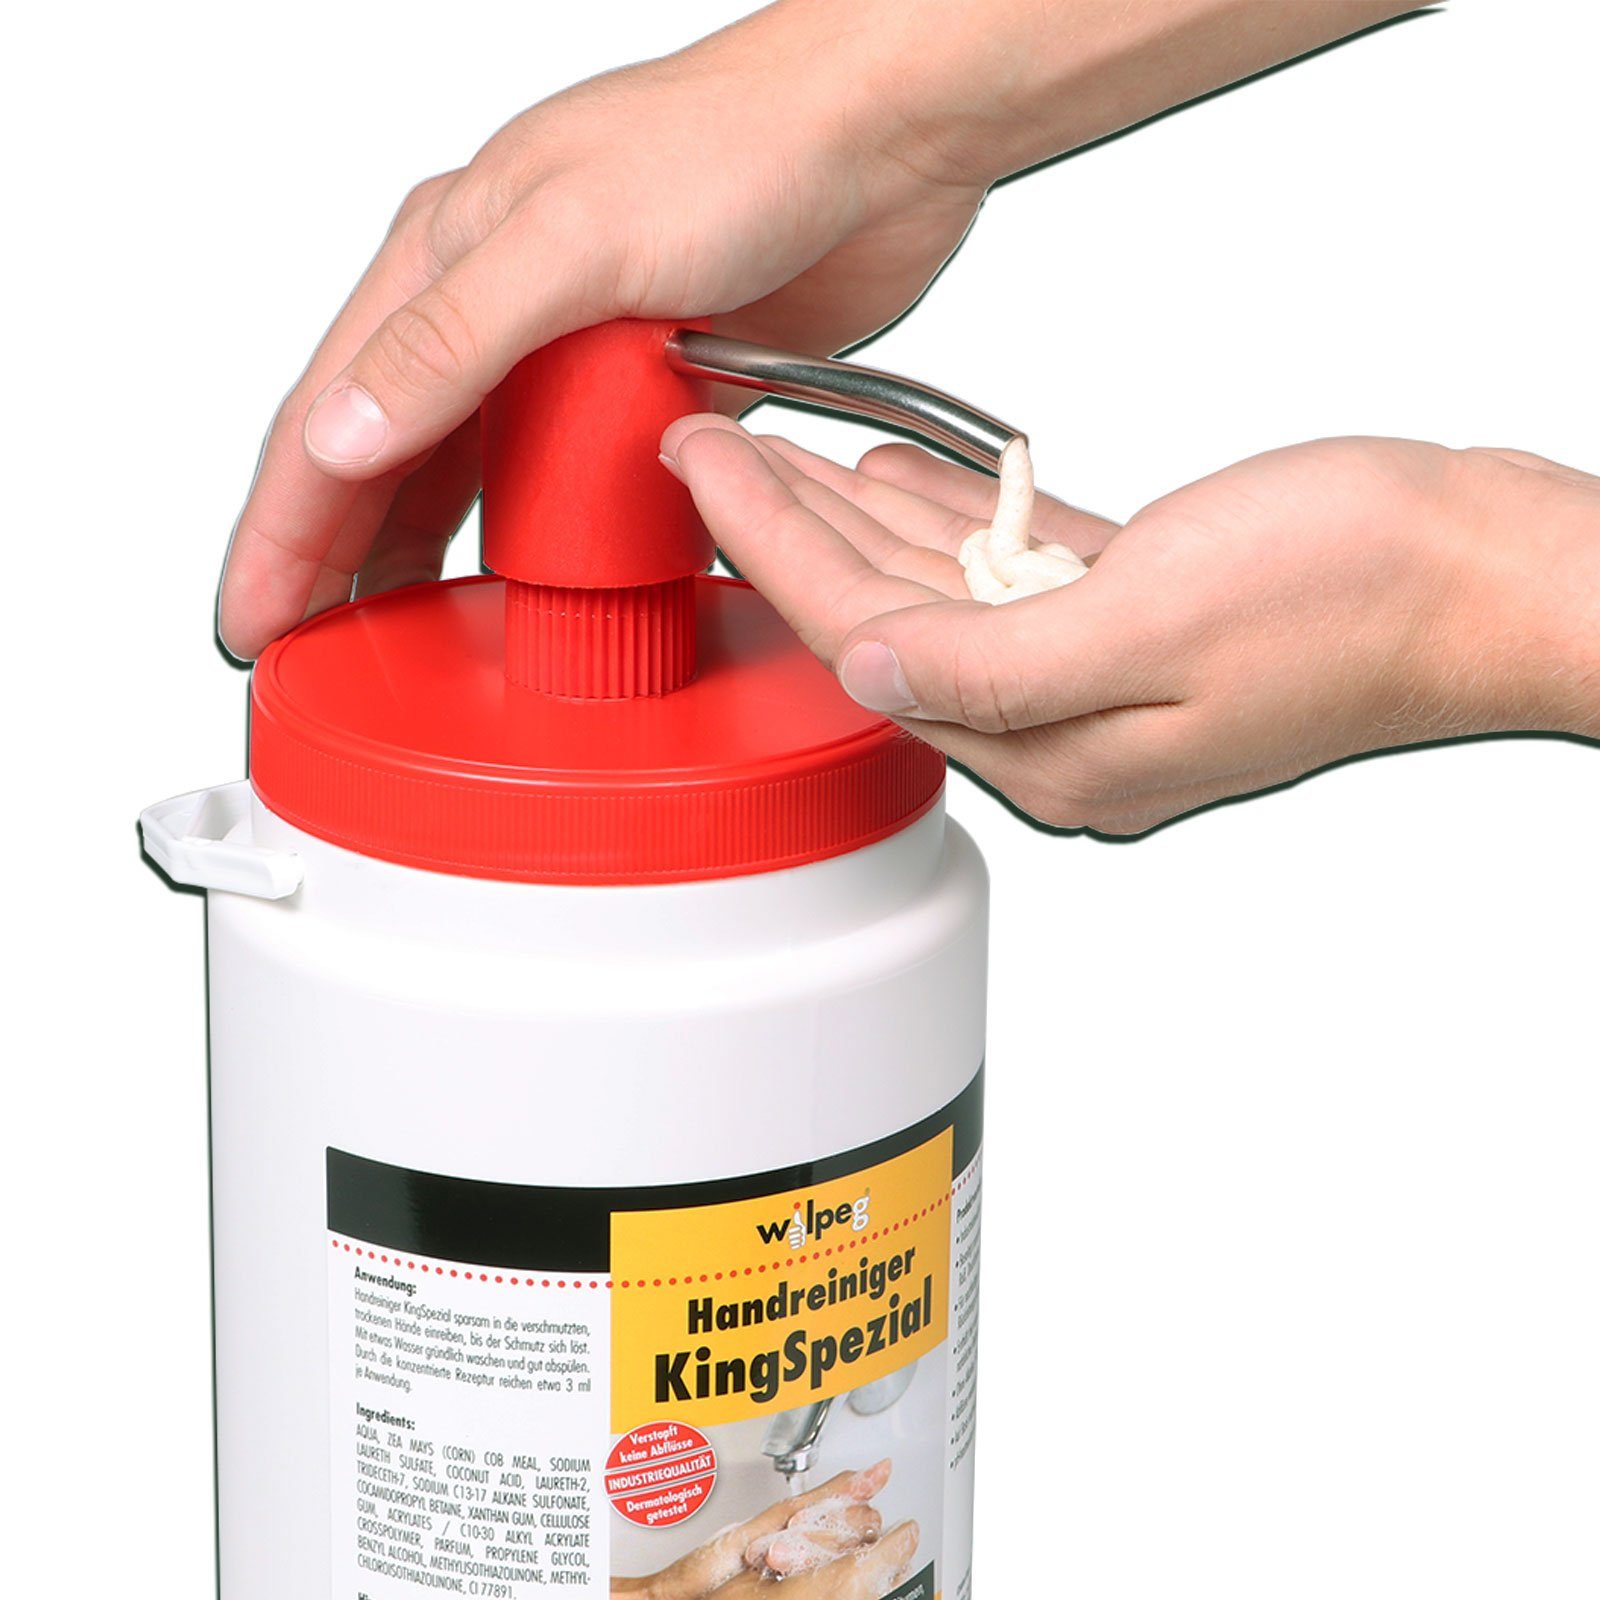 KingSpezial Spender, Handreiniger Reinigungspaste Handwaschpaste Handcreme + wilpeg® 6L